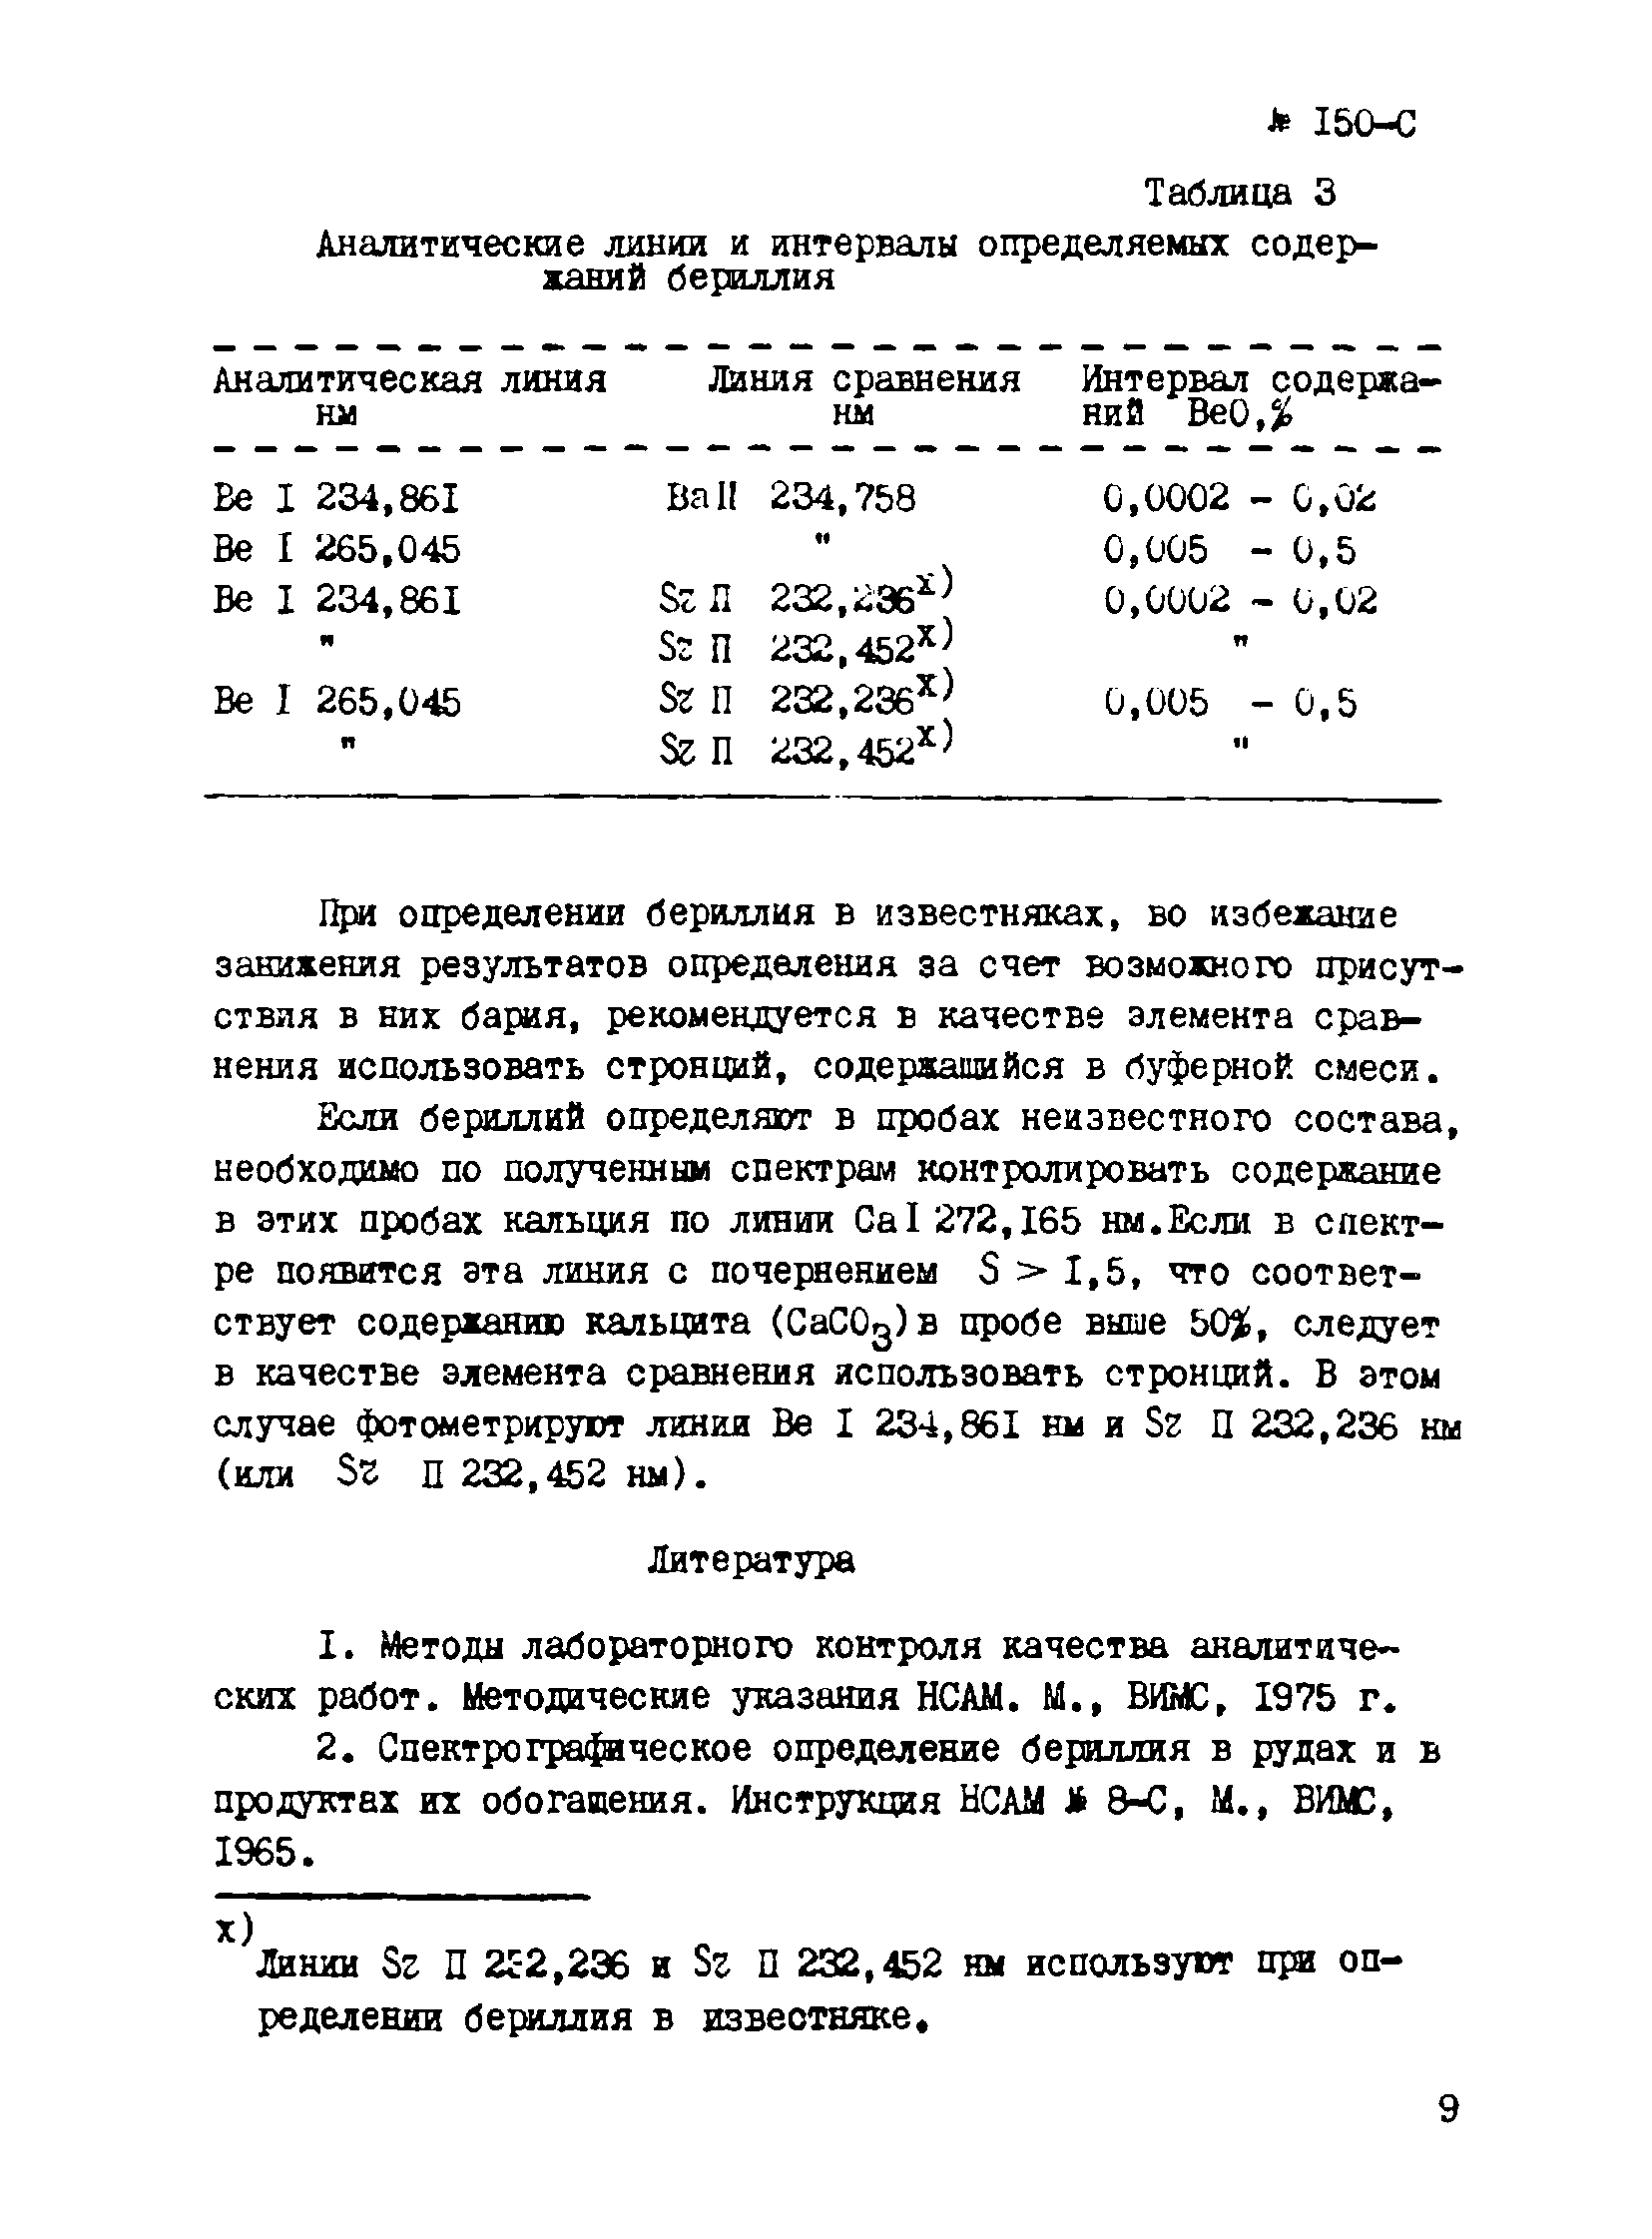 Инструкция НСАМ 150-С